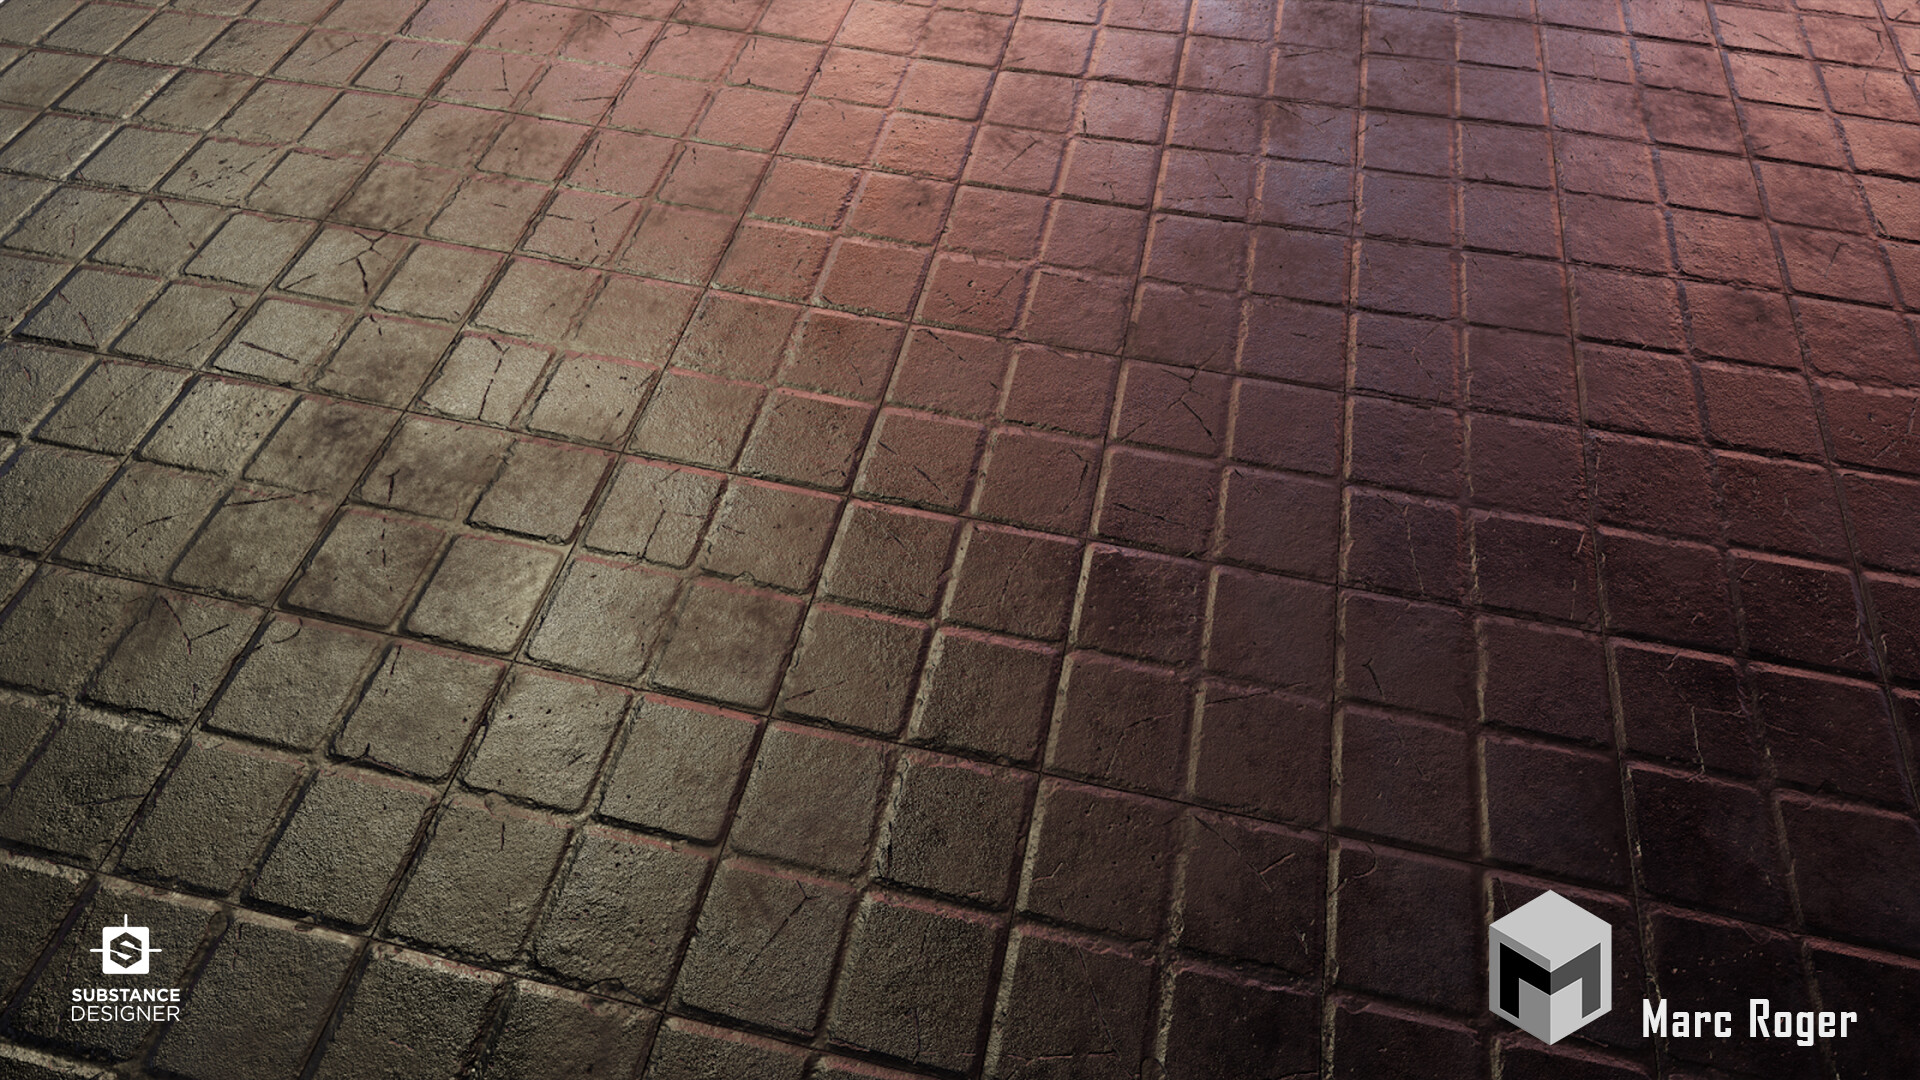 ArtStation - City floor texture